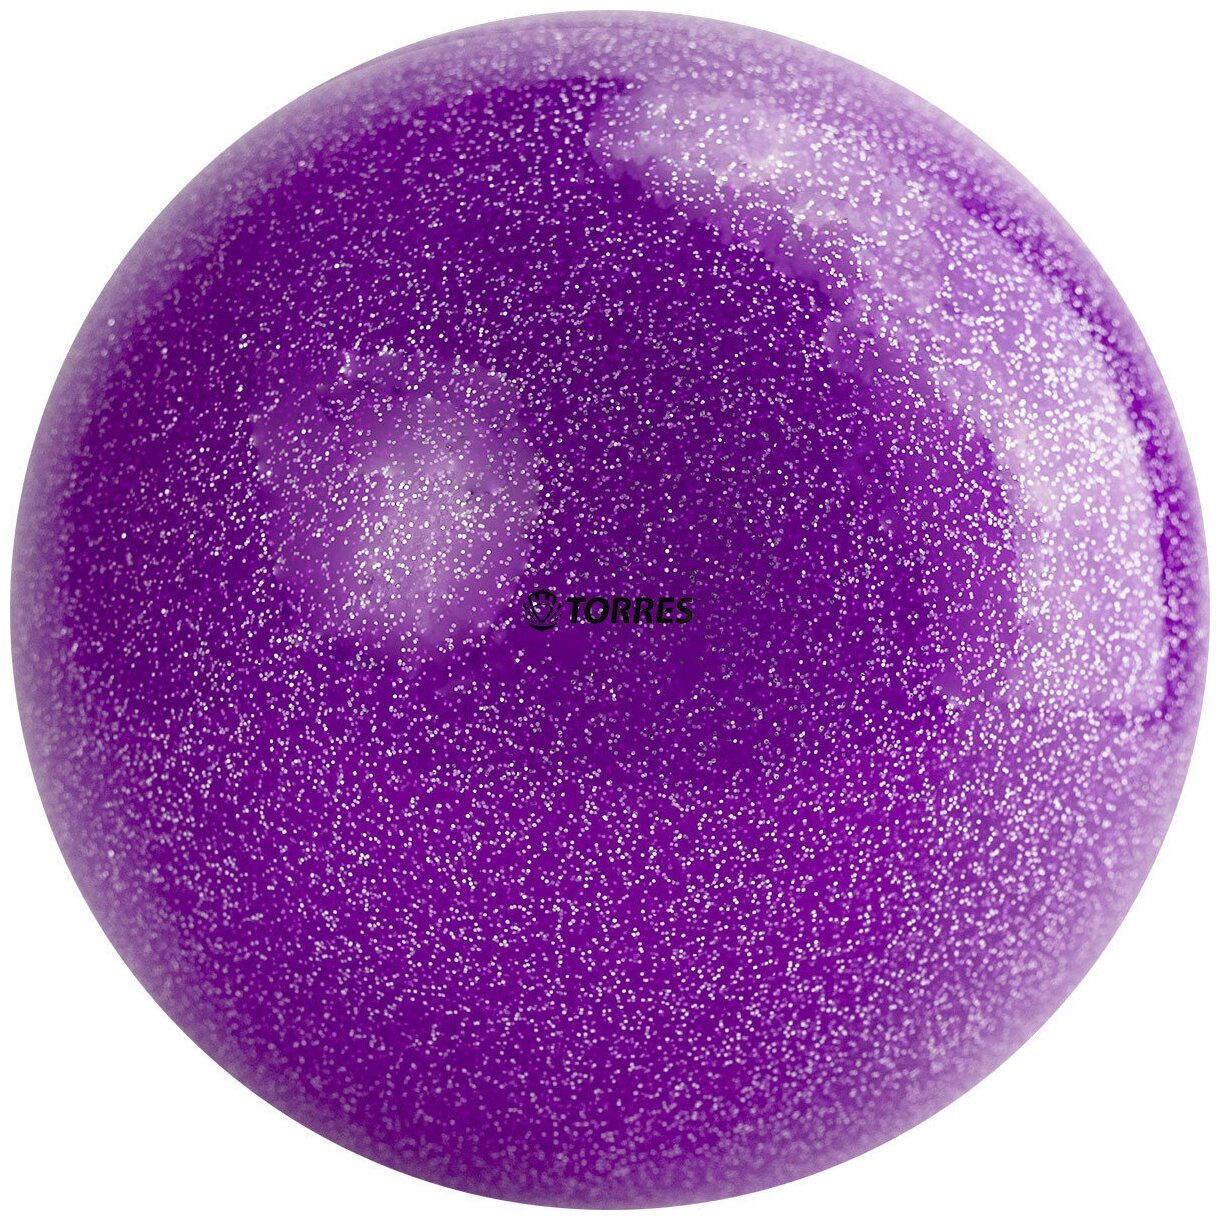 Мяч для художественной гимнастики однотонный Torres арт. AGP-19-07, диам. 19 см, ПВХ, фиолетовый с блестками